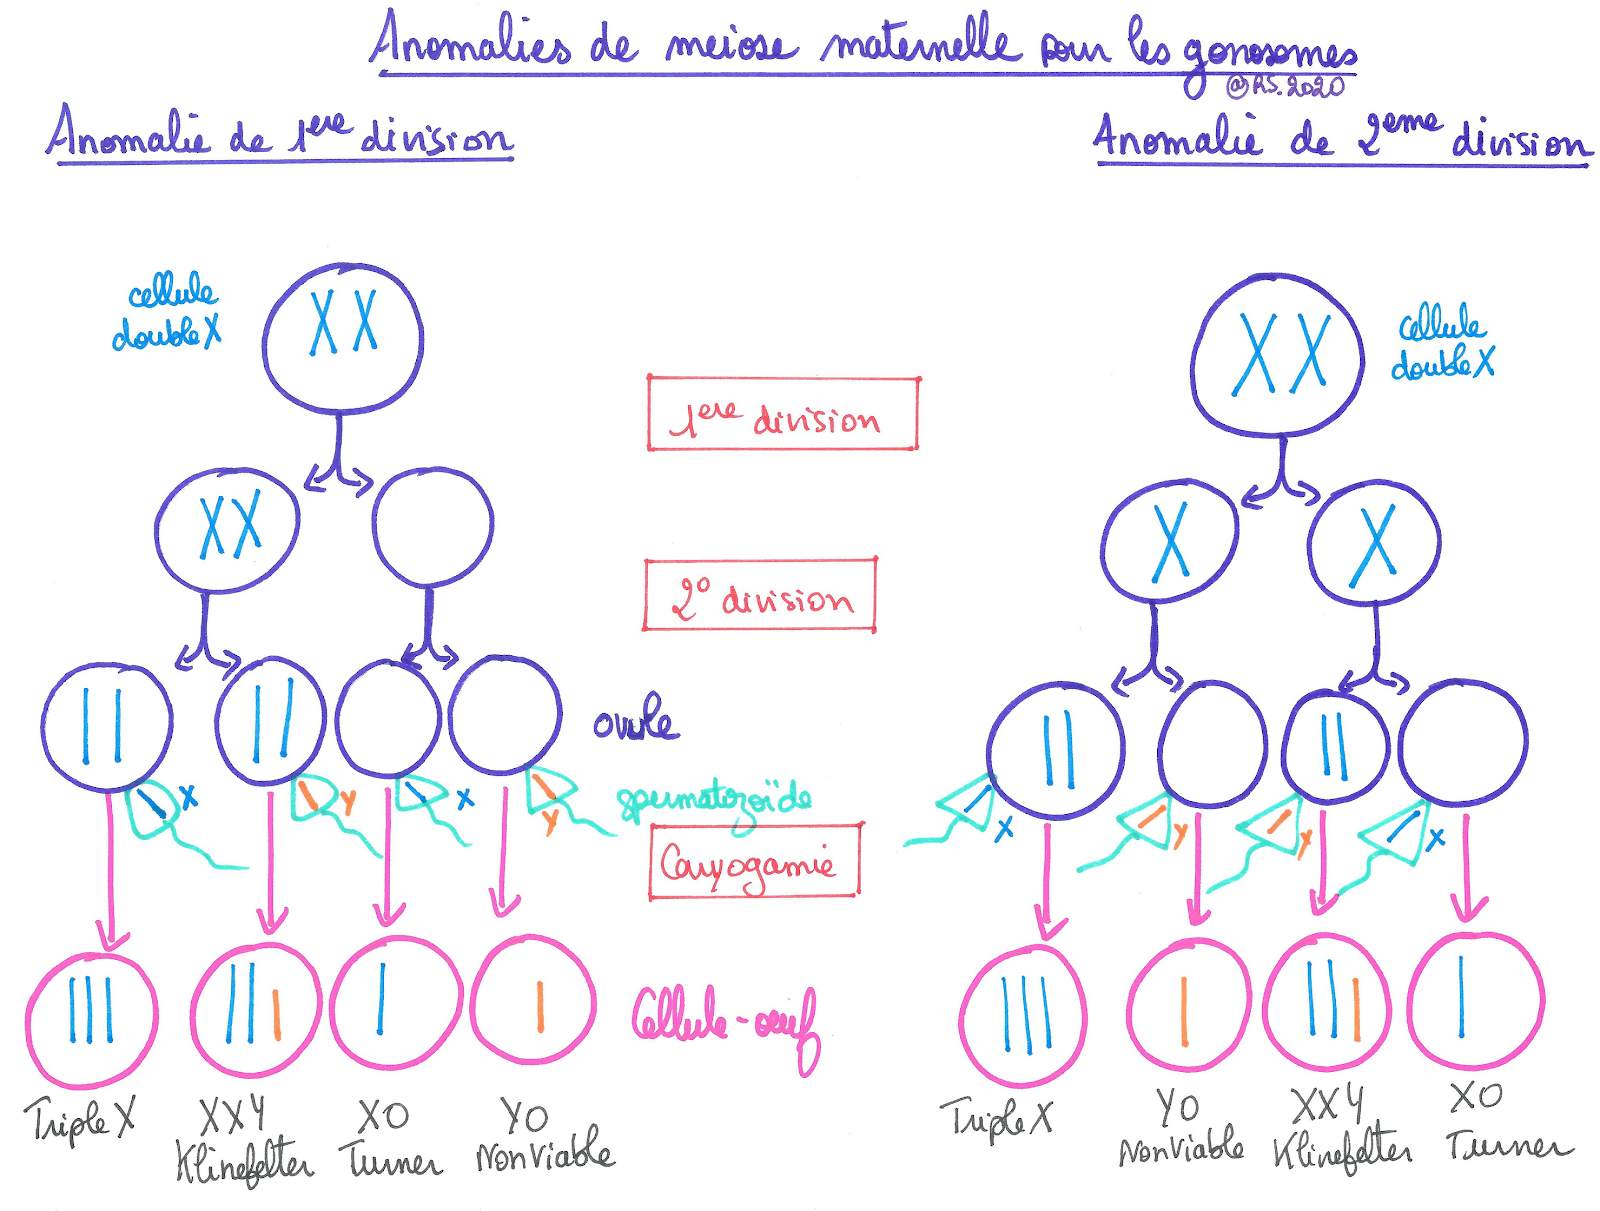 <b>Anomalies de méiose maternelle pour les gonosomes</b>